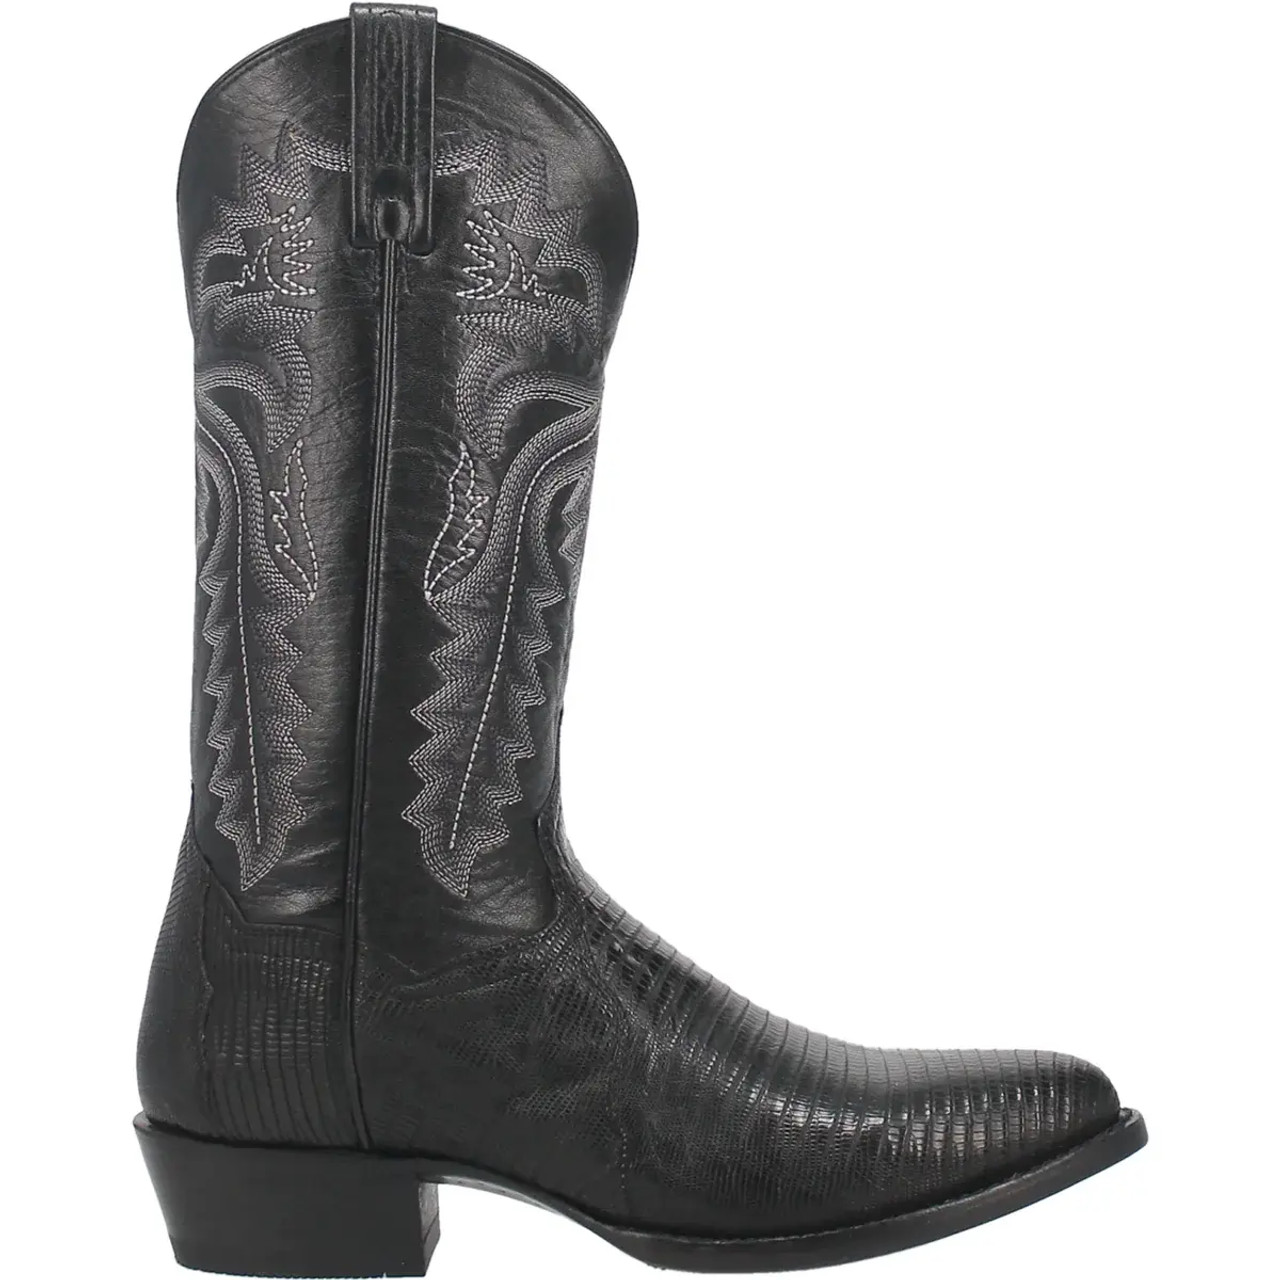 Dan Post Men's Boots - Winston Lizard - Black - Billy's Western Wear